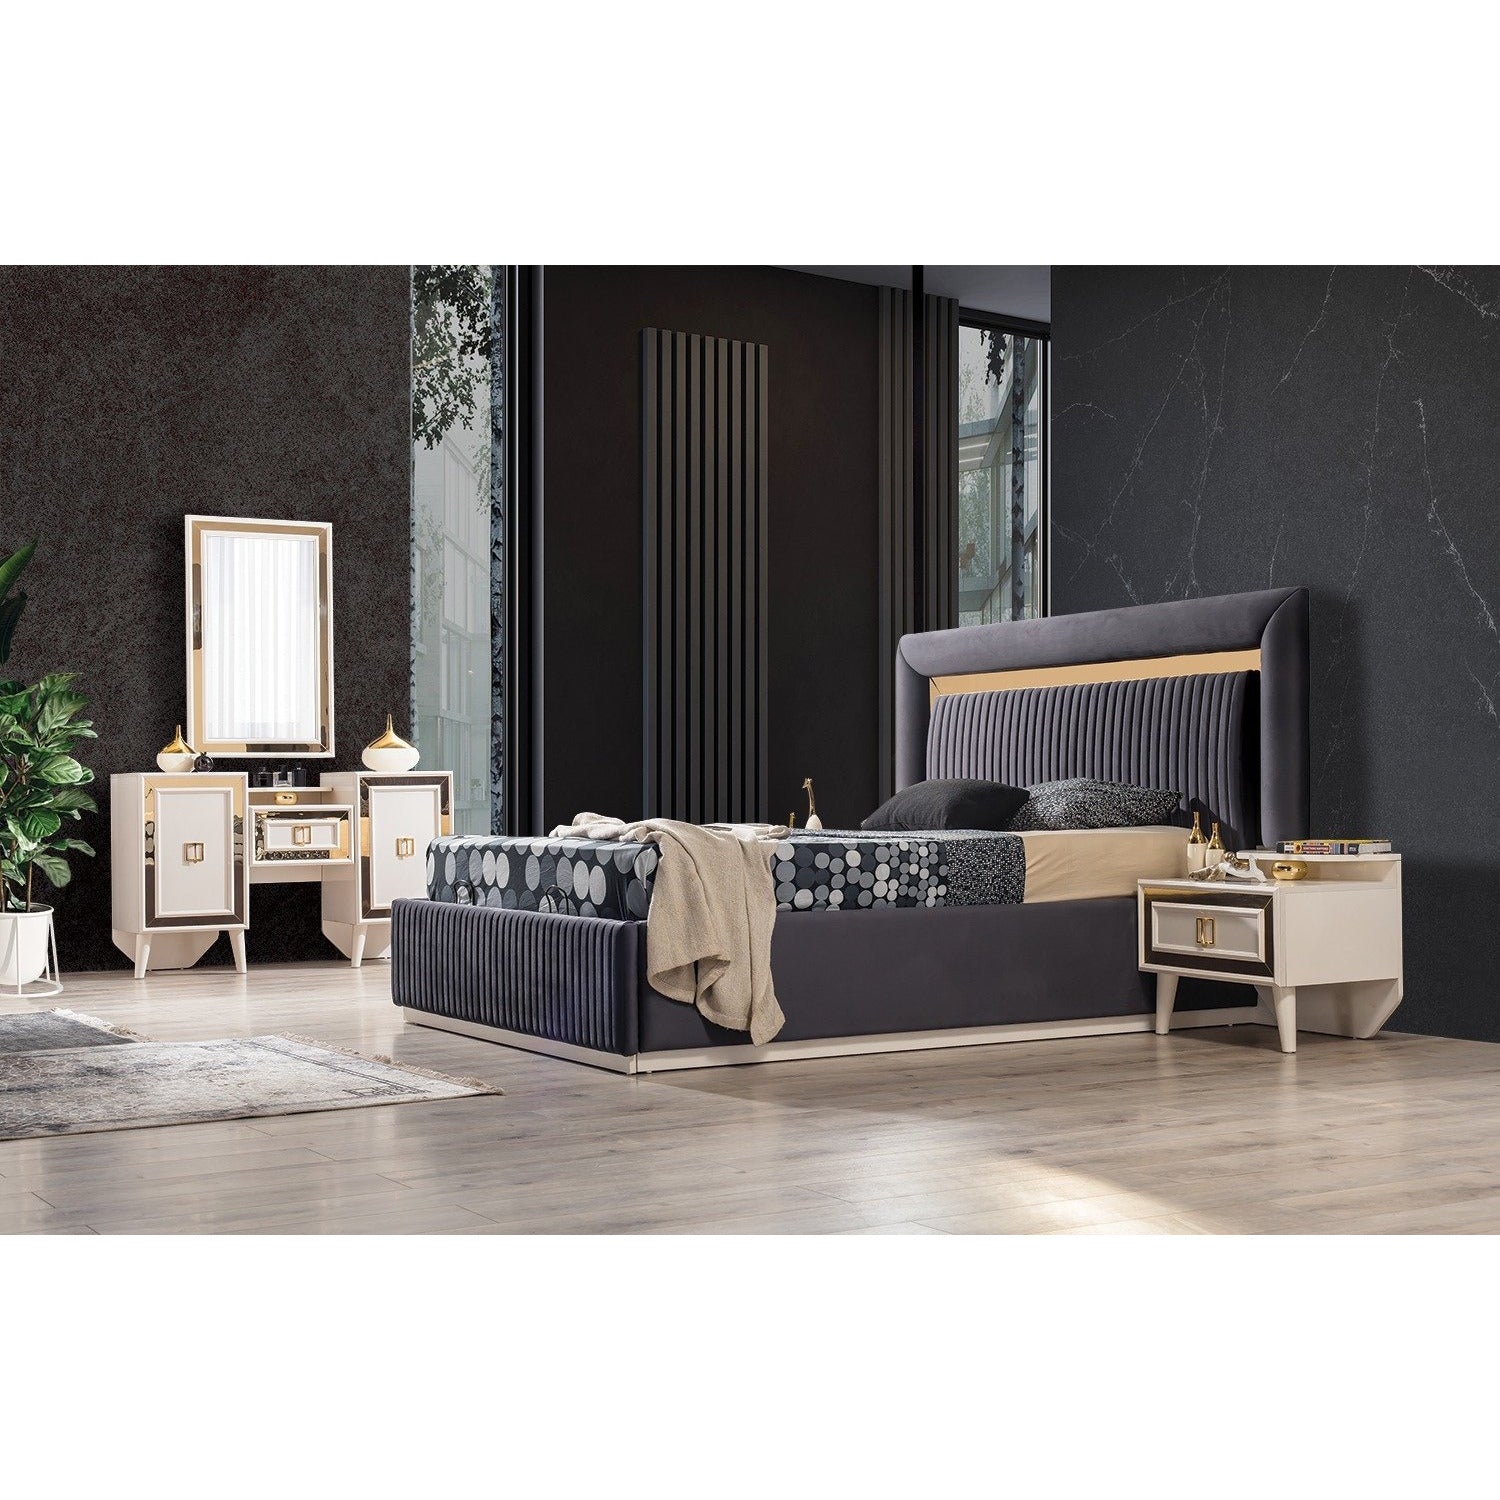 Gold Sminkbord med Spegel - LINE Furniture Group